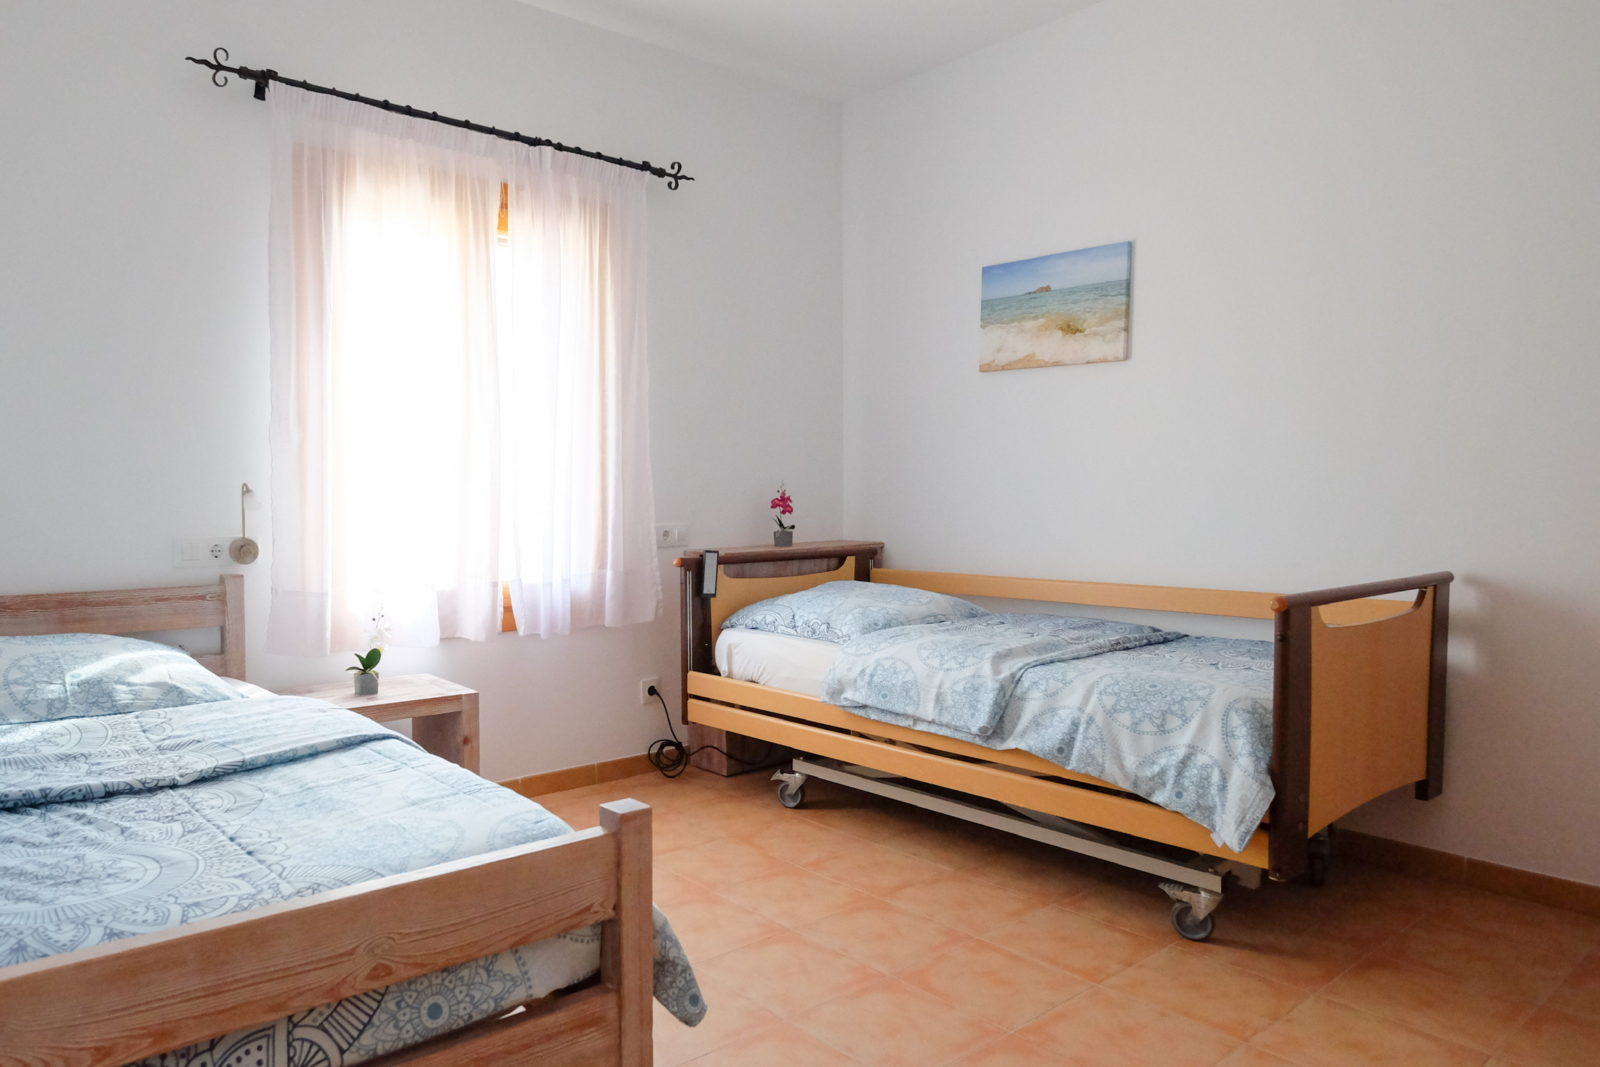 Doppelzimmer mit Pflegebett in barrierefreier Finca in Mallorca